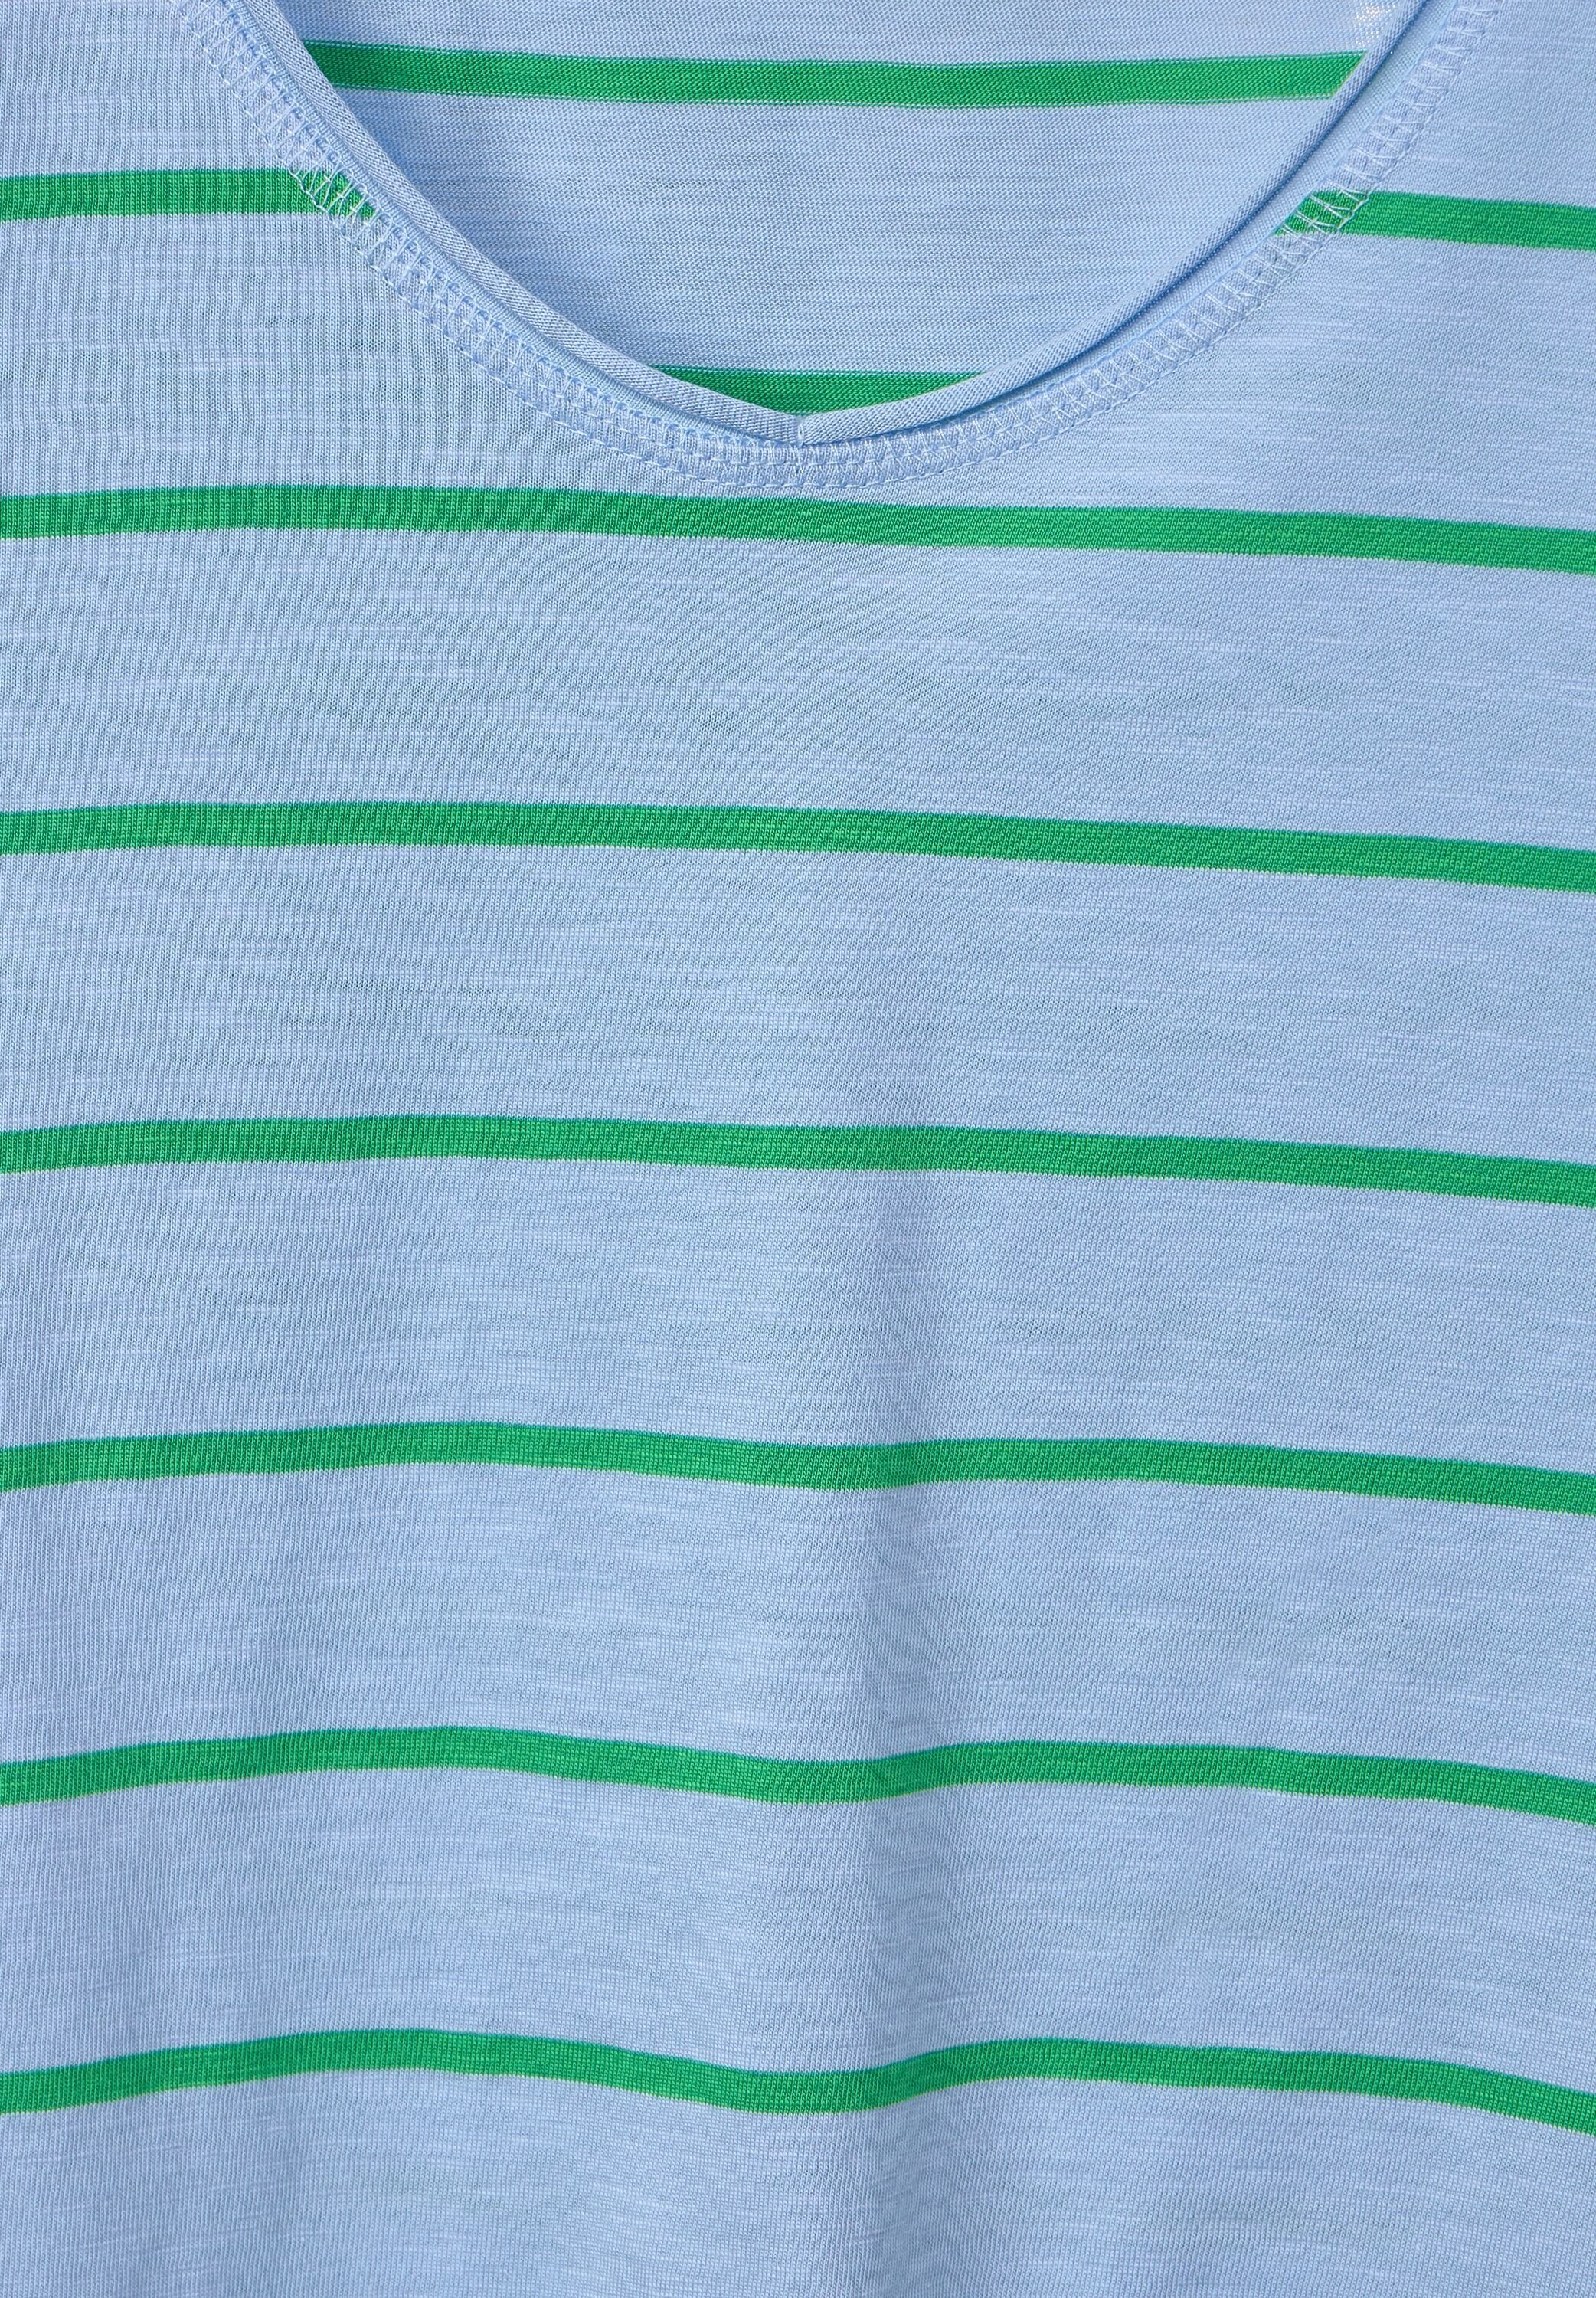 mit Cecil T-Shirt fresh abgerundetem blue tranquil und green V-Ausschnitt